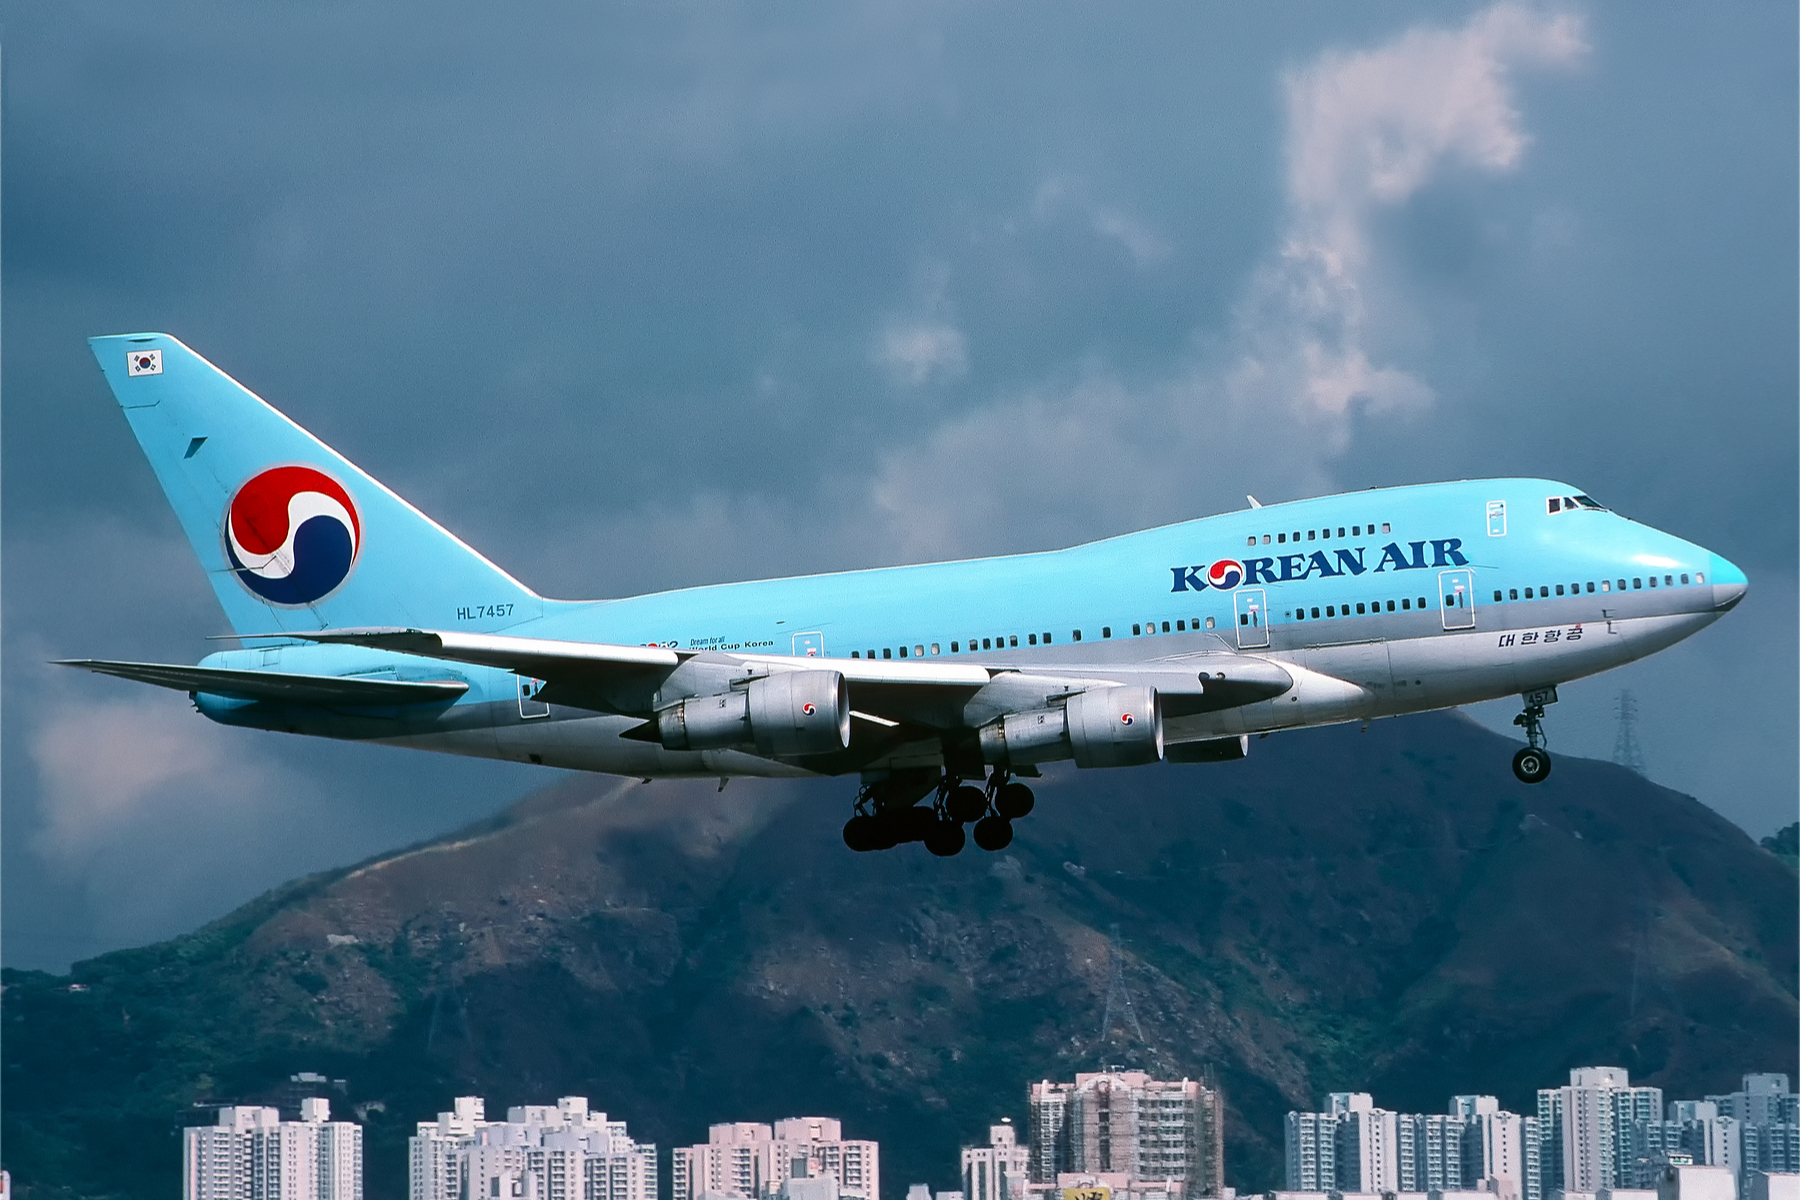 Korean Air to restart international flight operations in June